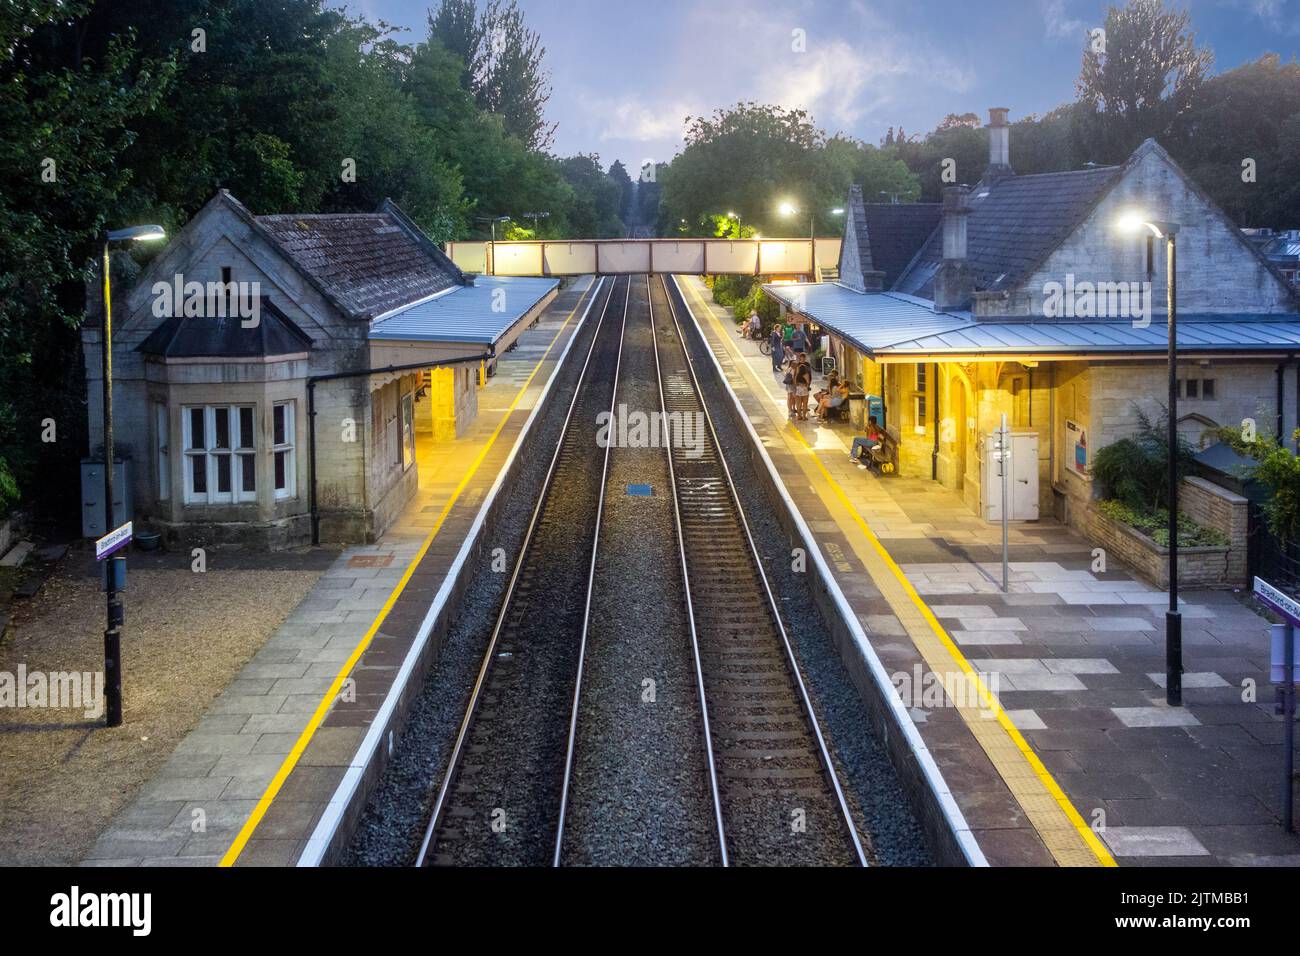 La estación de tren Great Western Railways iluminada en la ciudad de mercado de Wiltshire de Bradford en Avon Foto de stock